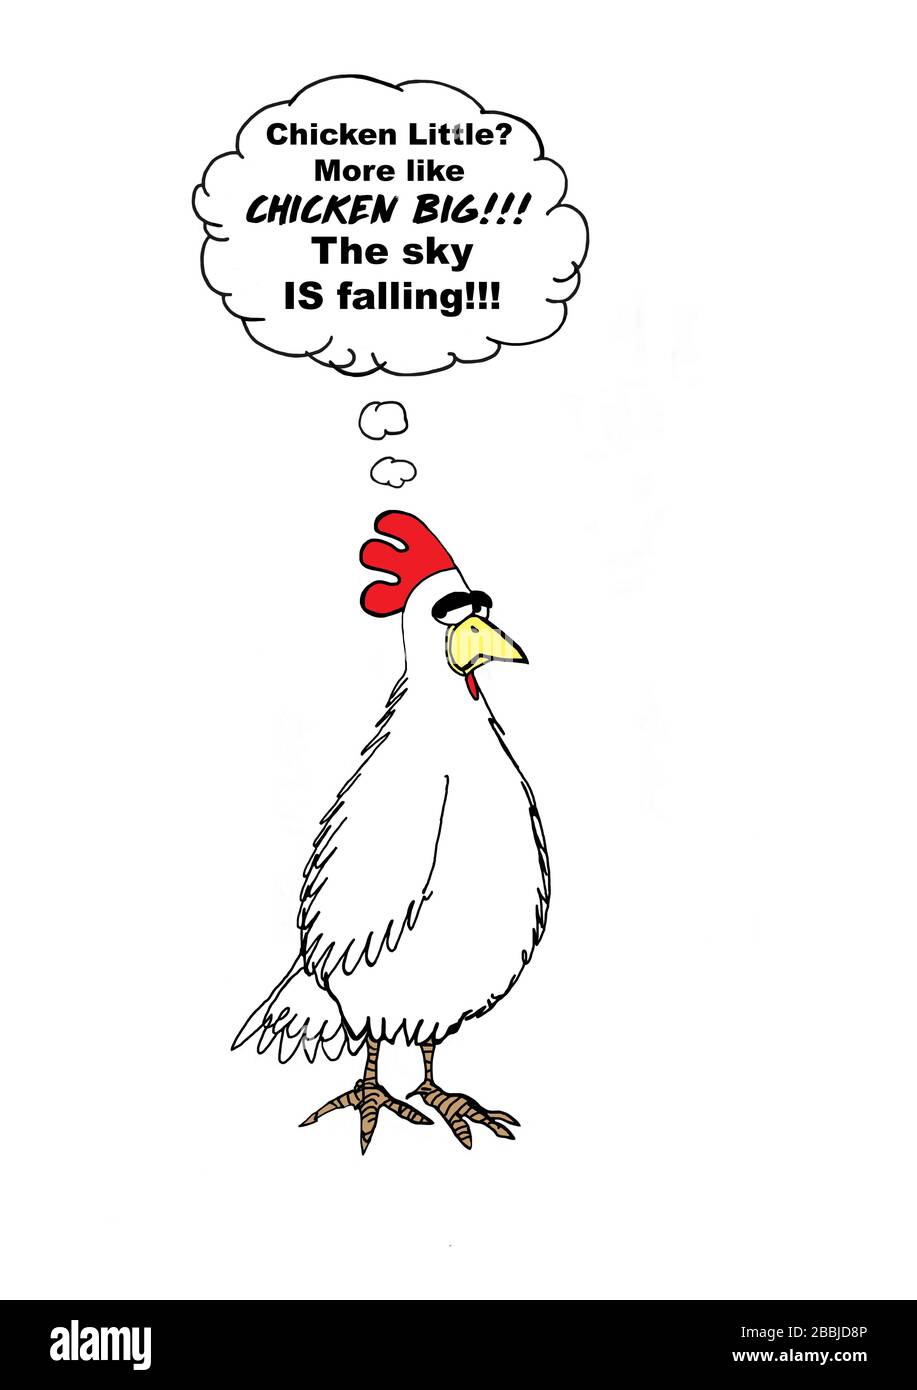 Ein Farb-Cartoon, der ein Huhn zeigt, das ausruft, dass es nicht "Hühnchenklein" ist, sondern eher "Hühnchengroß", da der Himmel wirklich fällt. Stockfoto